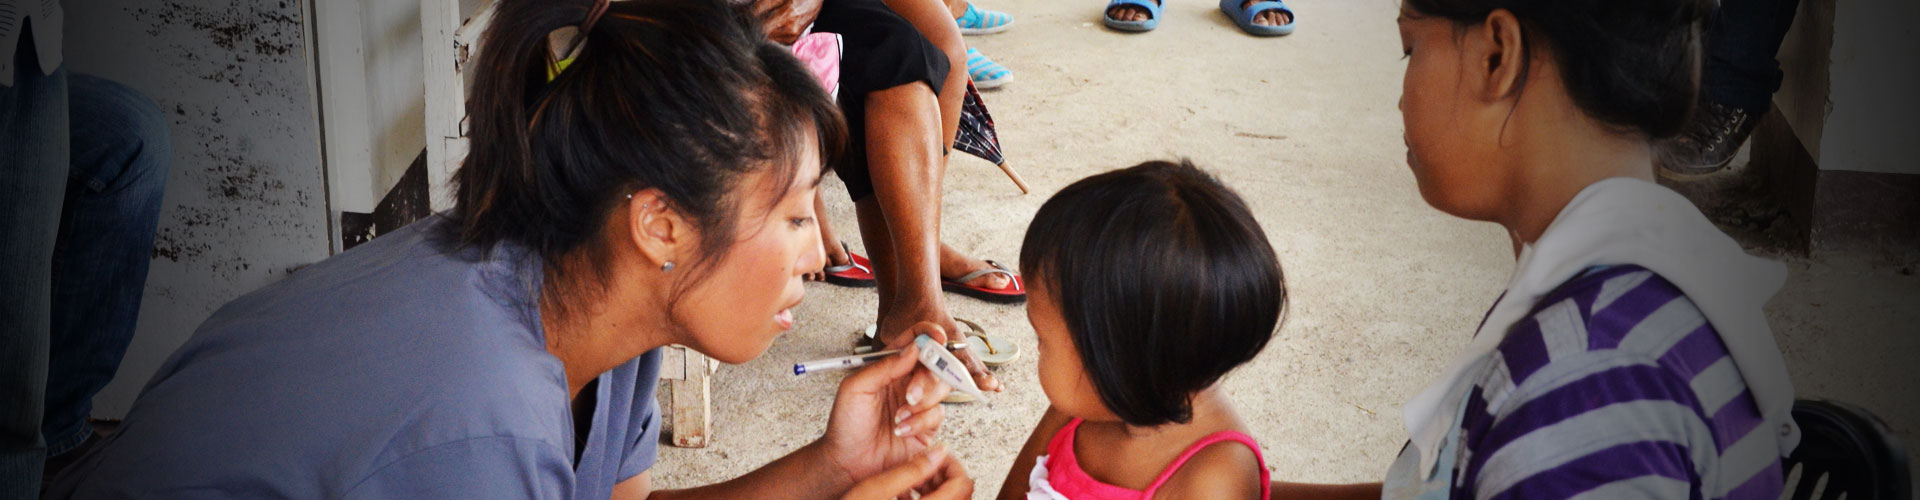 Freiwilligenarbeit im ländlichen medizinischen Bereich auf den Philippinen